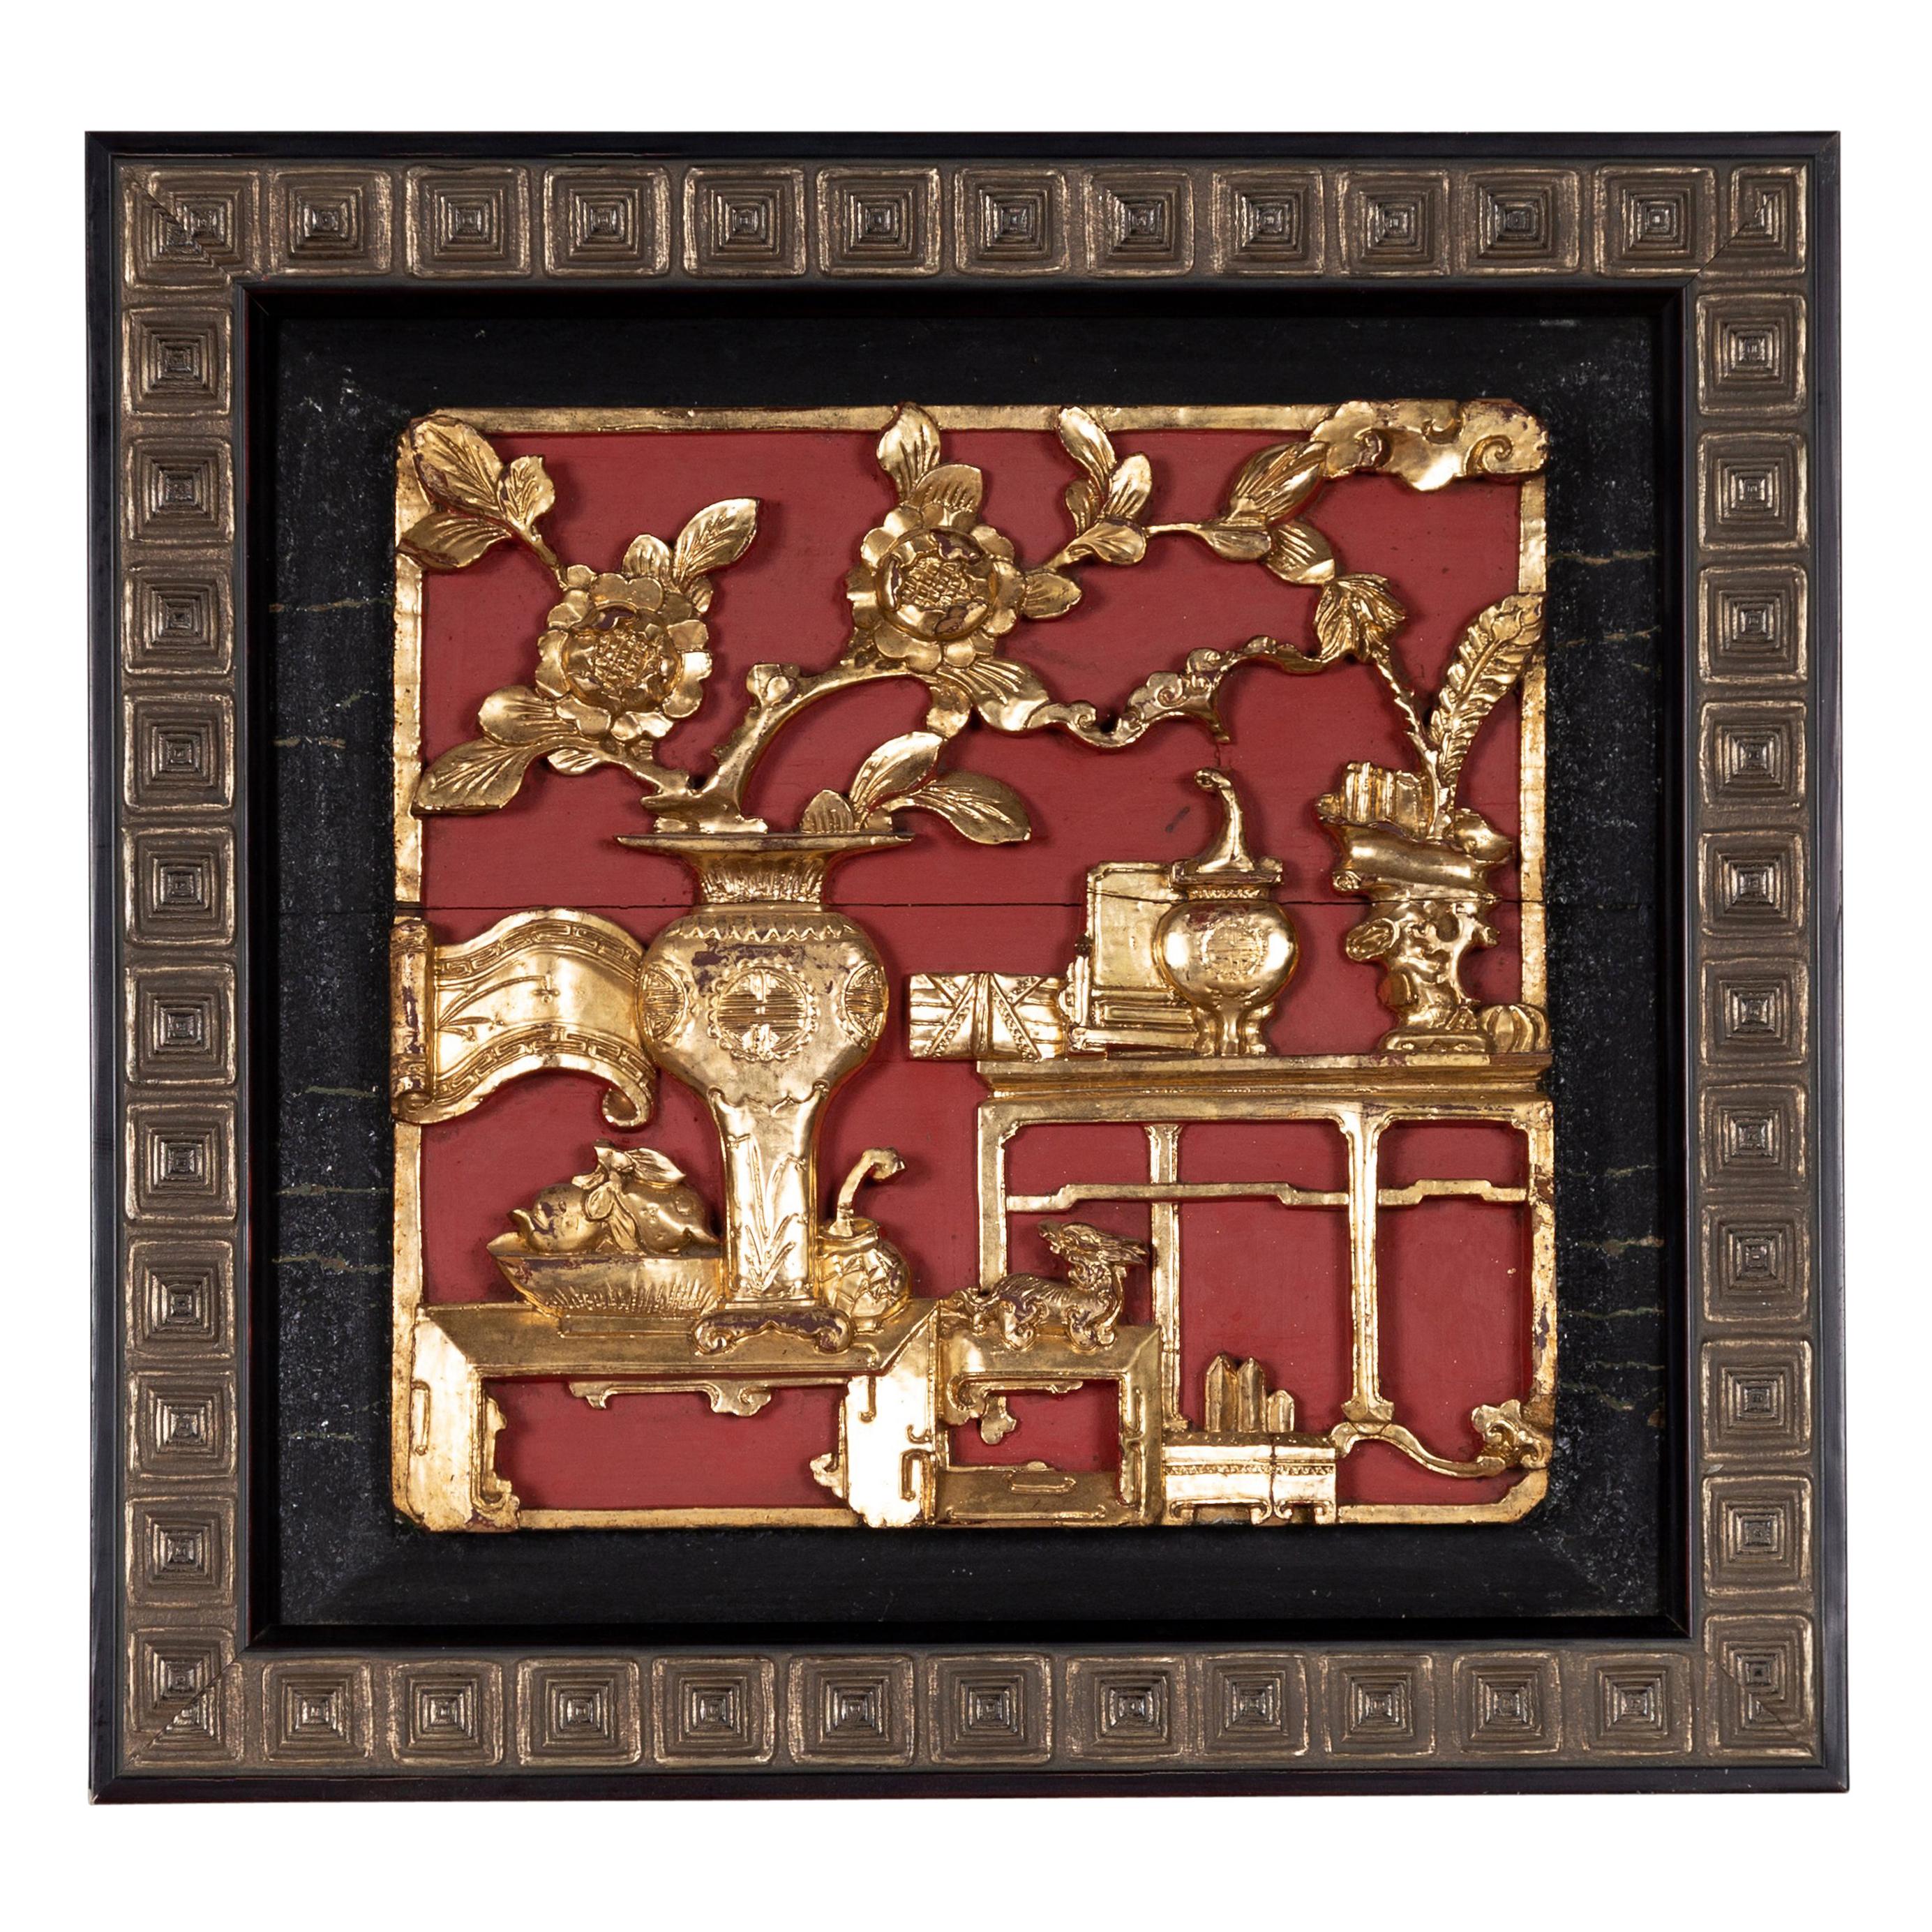 Qing Dynasty Giltwood und rot bemalt floralen architektonischen Panel in Frame